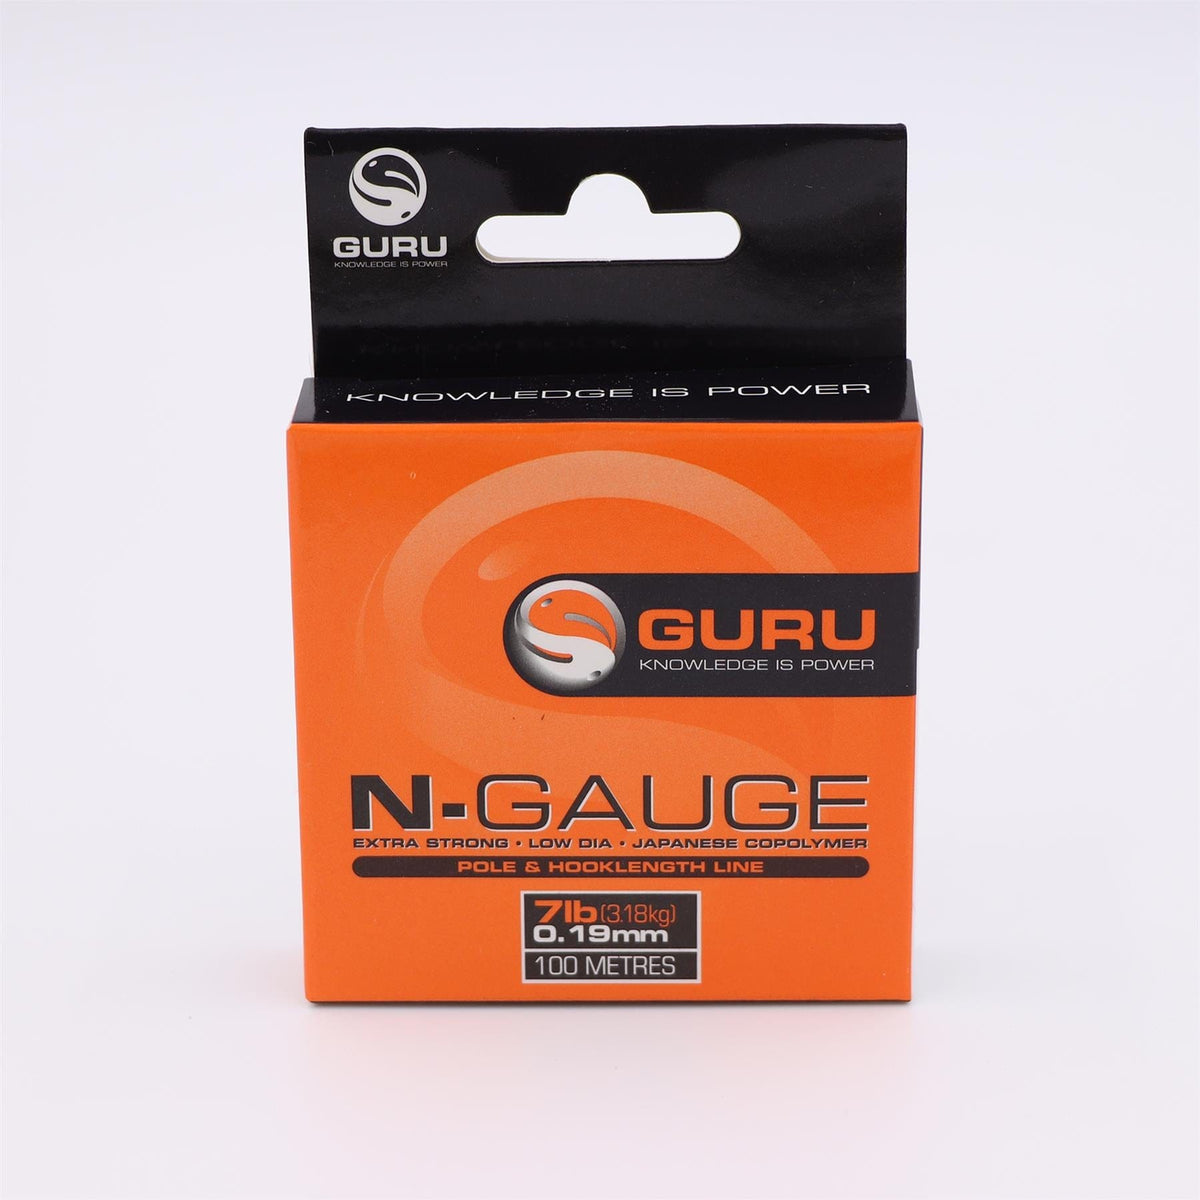 Guru N-Gauge 7lb (0.19mm)